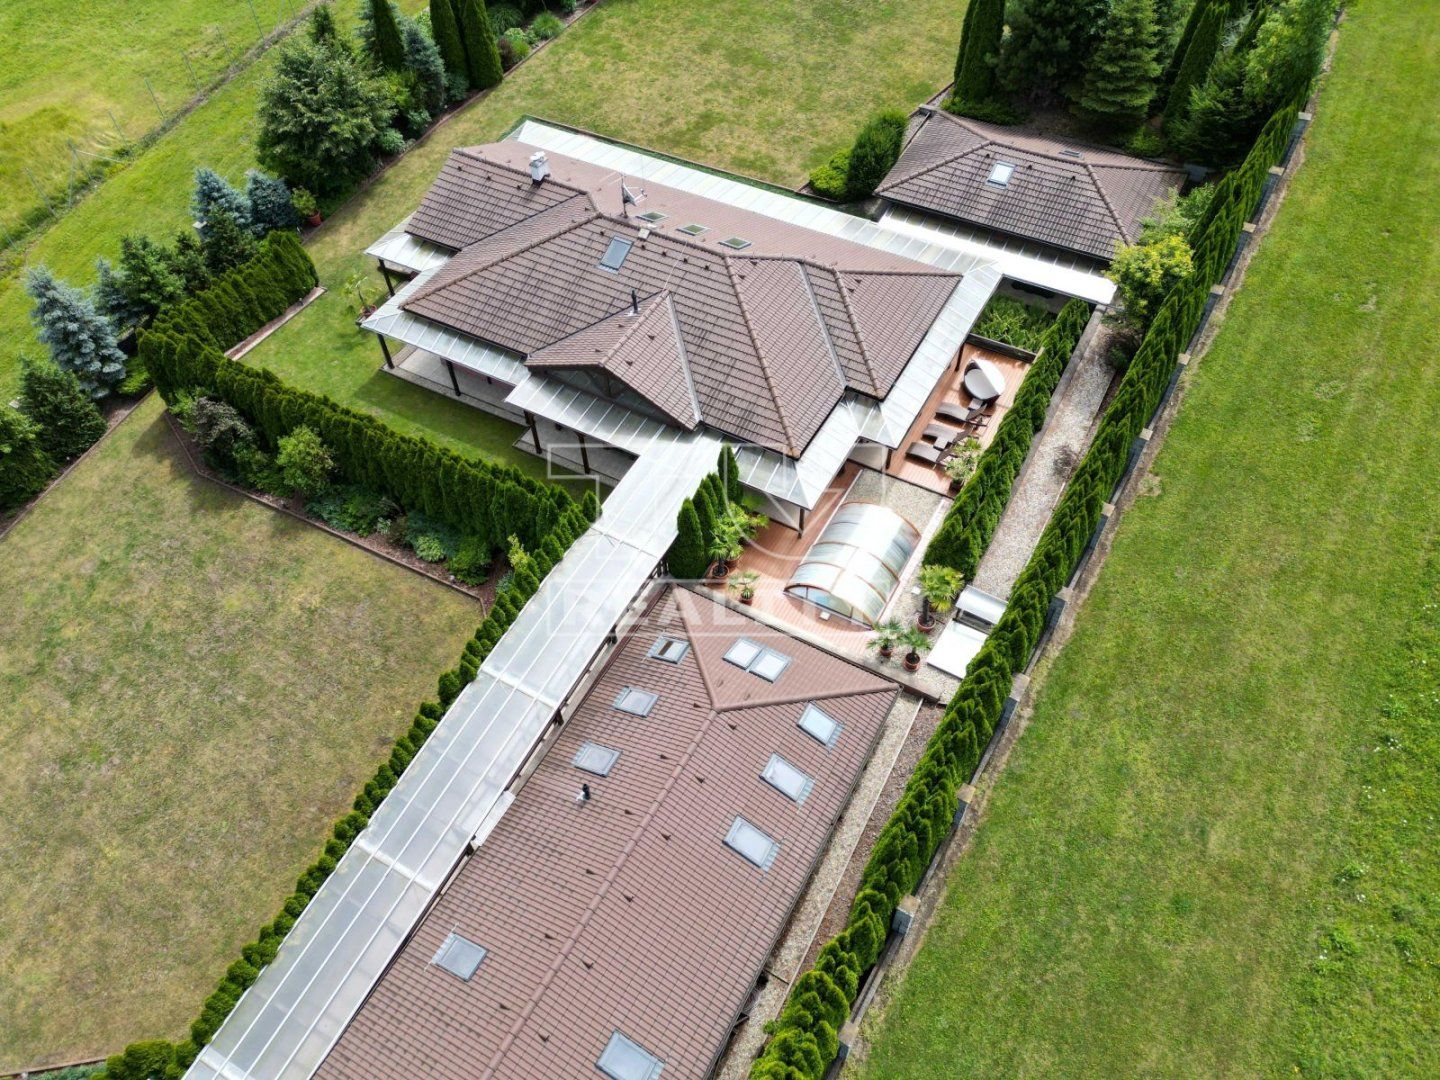 TUreality EXKLUZÍVNE ponúka na predaj krásny 5 izbový dom so zastavanou plochou 360m² a s veľkým pozemkom 6447m² - pri Bytči - obec Petrovice - časť S